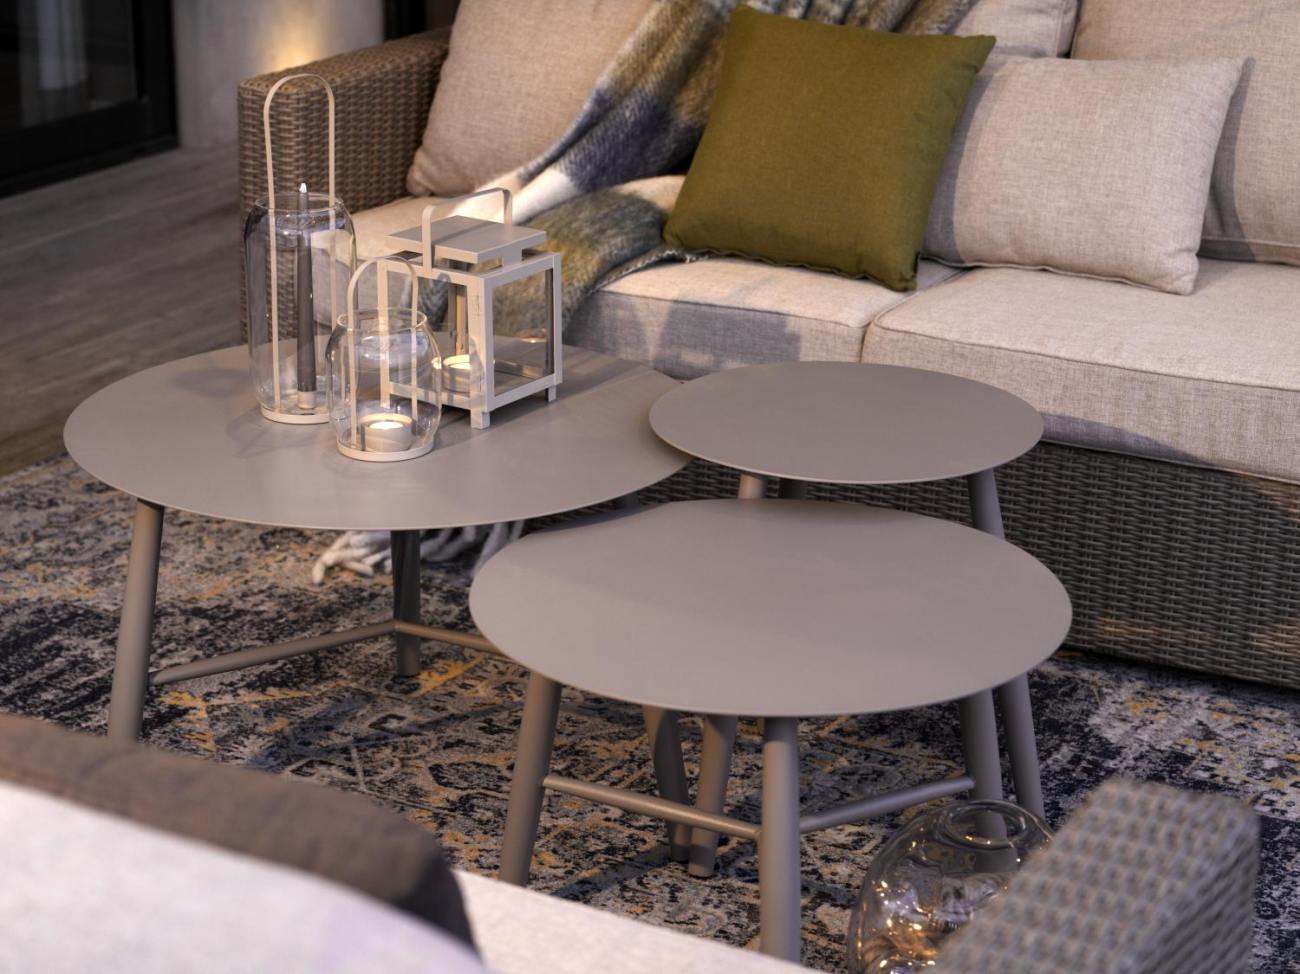 Der Gartenbeistelltisch Vannes überzeugt mit seinem modernen Design. Gefertigt wurde die Tischplatte aus Metall, welche einen Kaki Farbton besitzt. Das Gestell ist auch aus Metall und hat eine Kaki Farbe. Der Tisch besitzt einen Durchmesser von 45 cm.